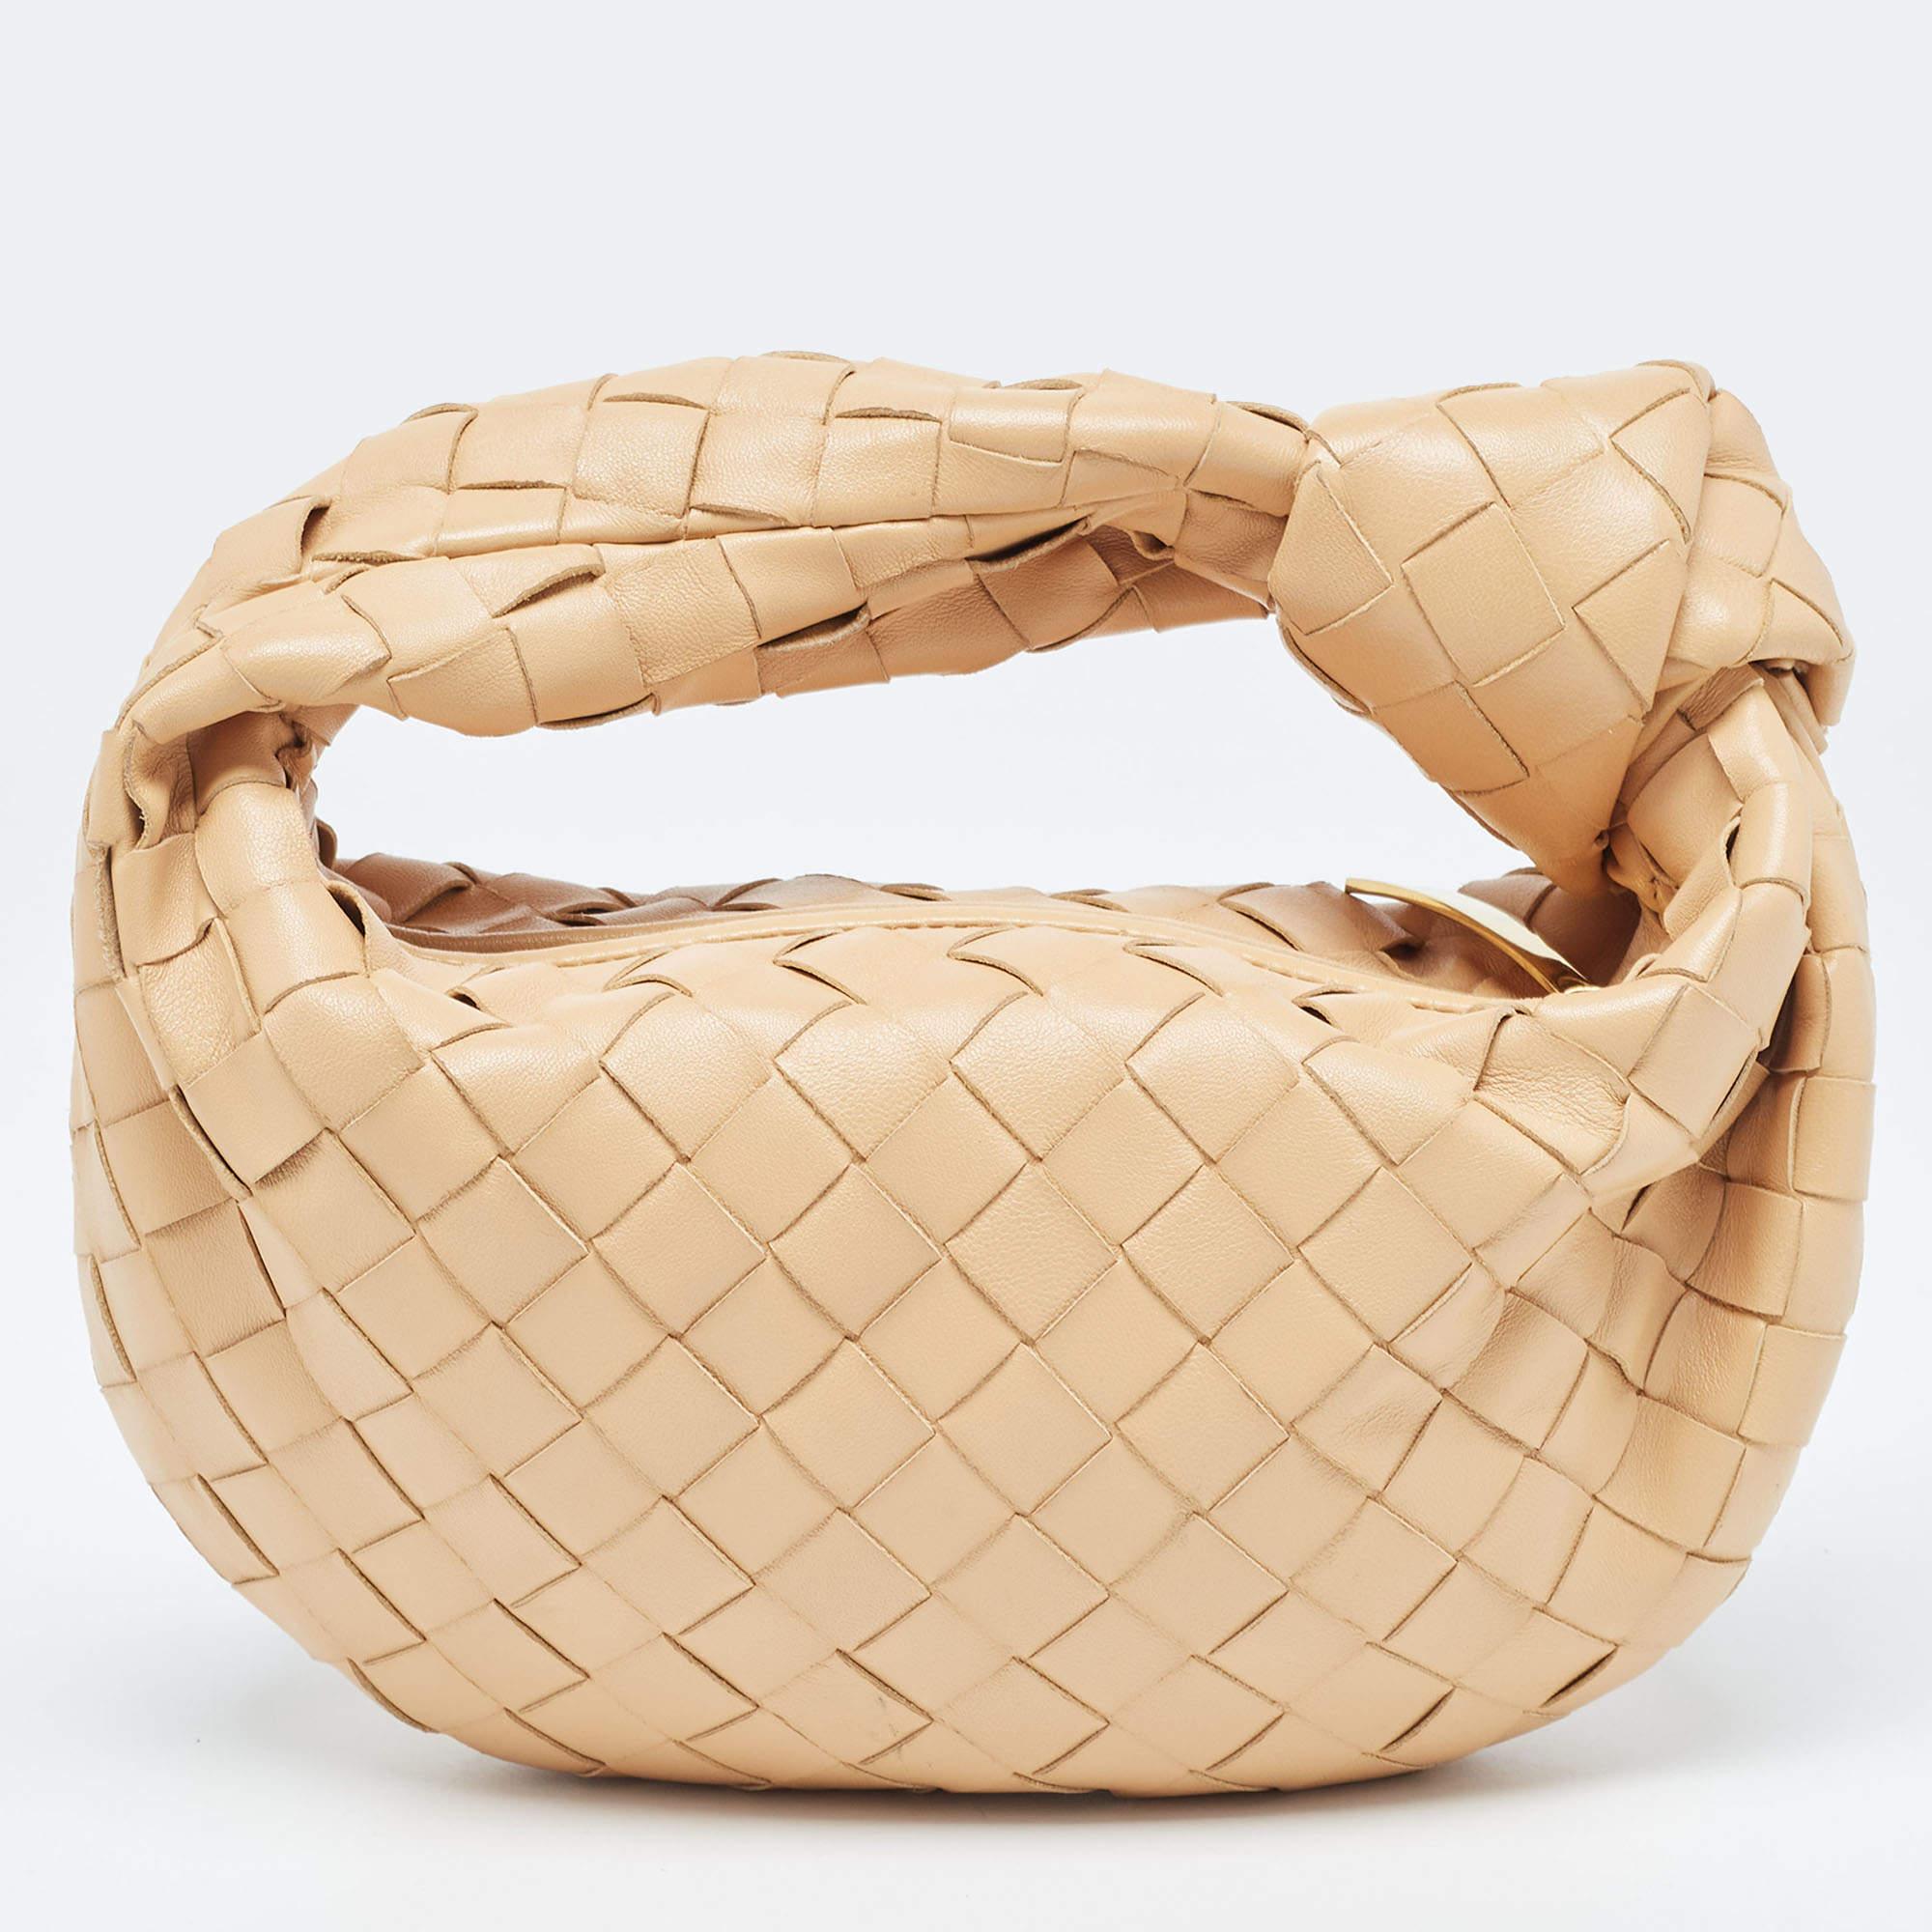 Ce sac hobo Bottega Veneta Jodie est réalisé en cuir selon la technique de tissage Intrecciato emblématique de la marque et présente une silhouette sans couture. Ce sac, qui incarne l'élégance et le charme subtil, est retenu par une anse nouée. Le